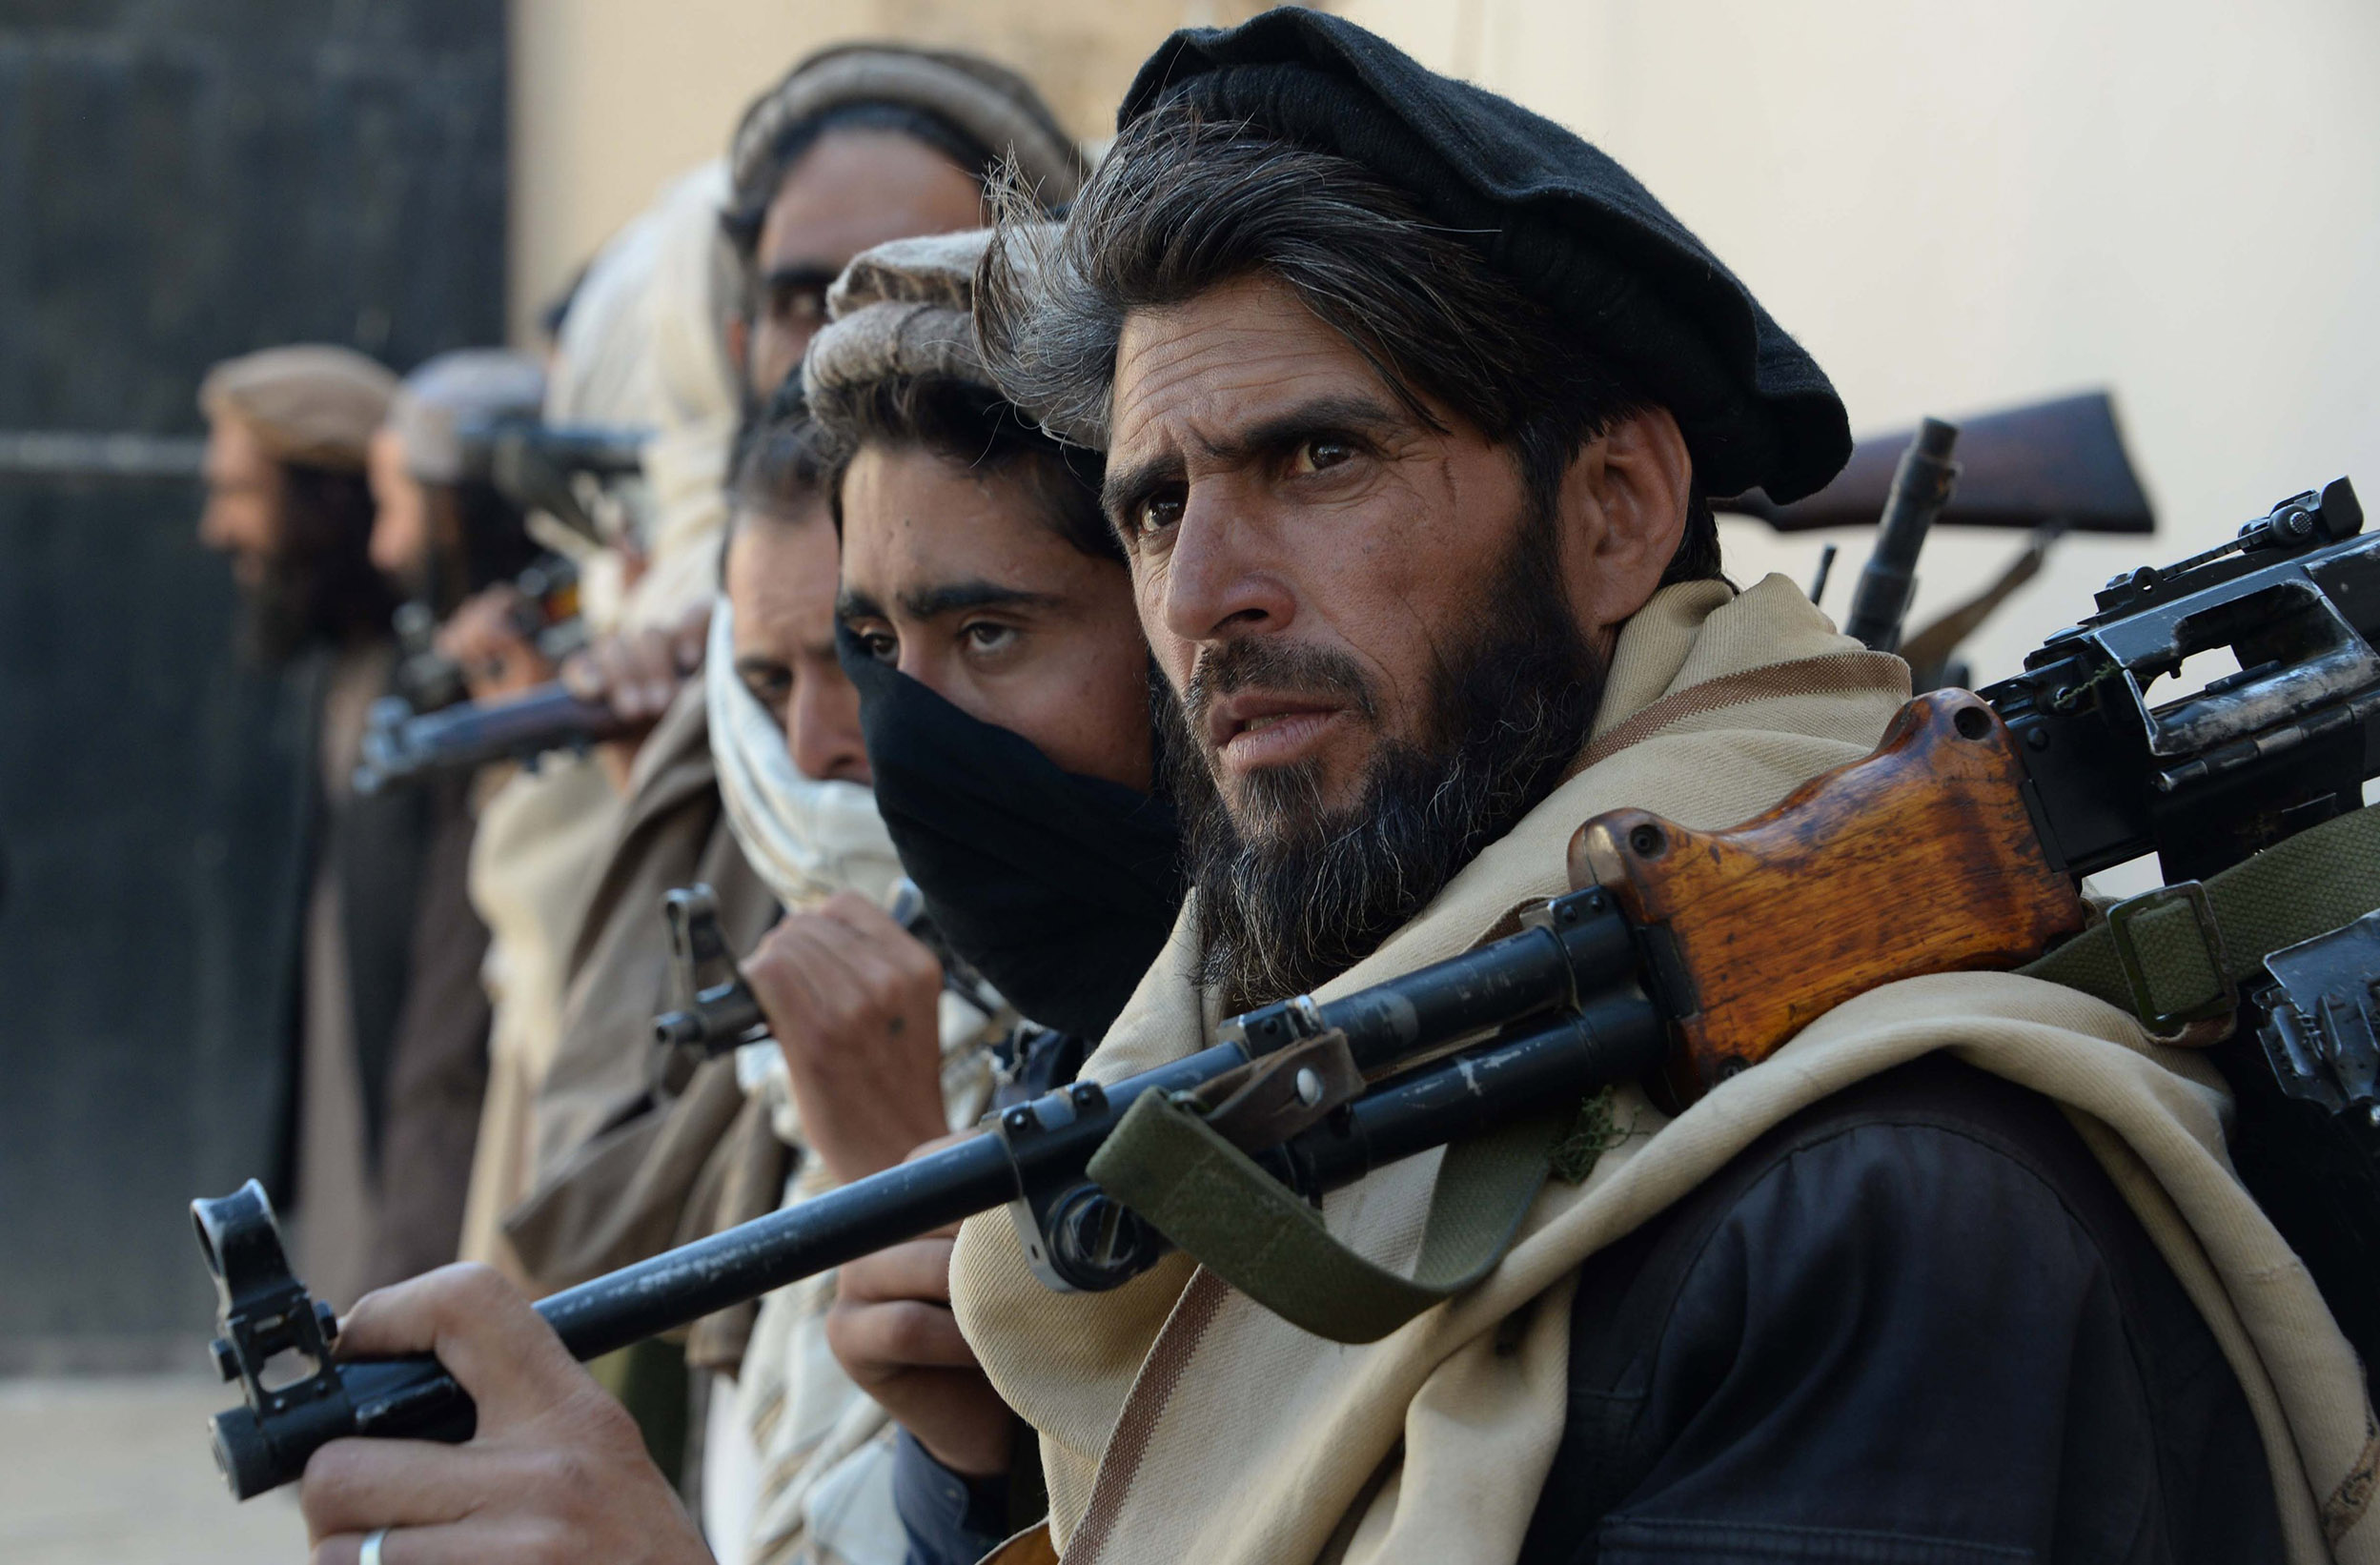 SAS commandos escaped Taliban by wearing burqas